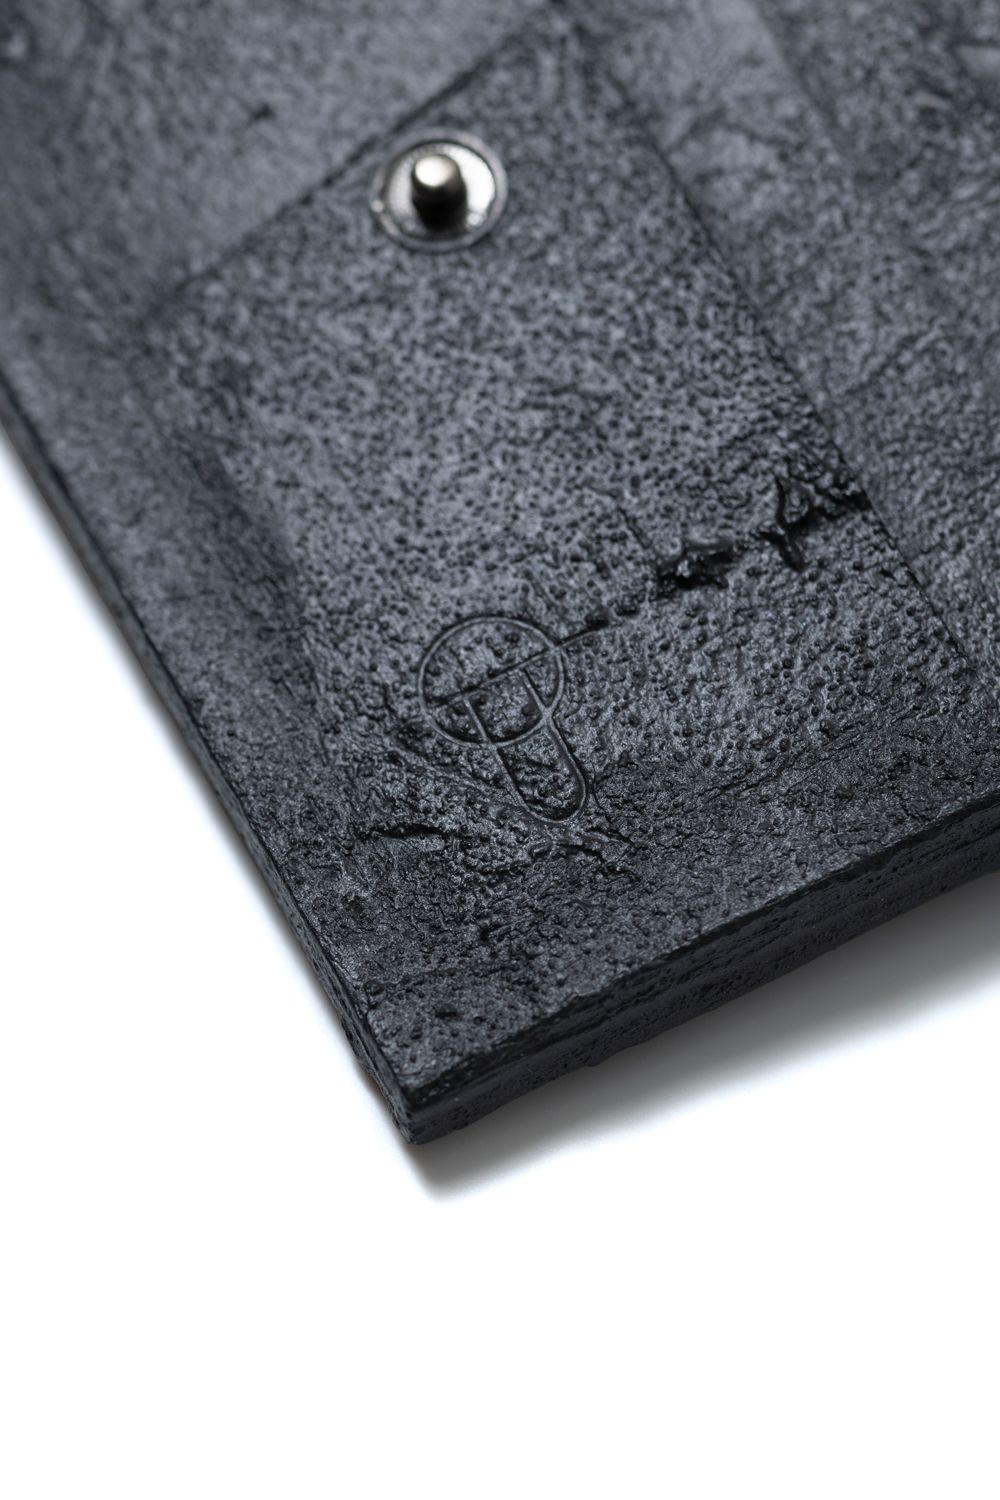 KAGARI YUSUKE - 【お取り寄せ可能】二つ折り財布 [黒い壁] / mw20-bk